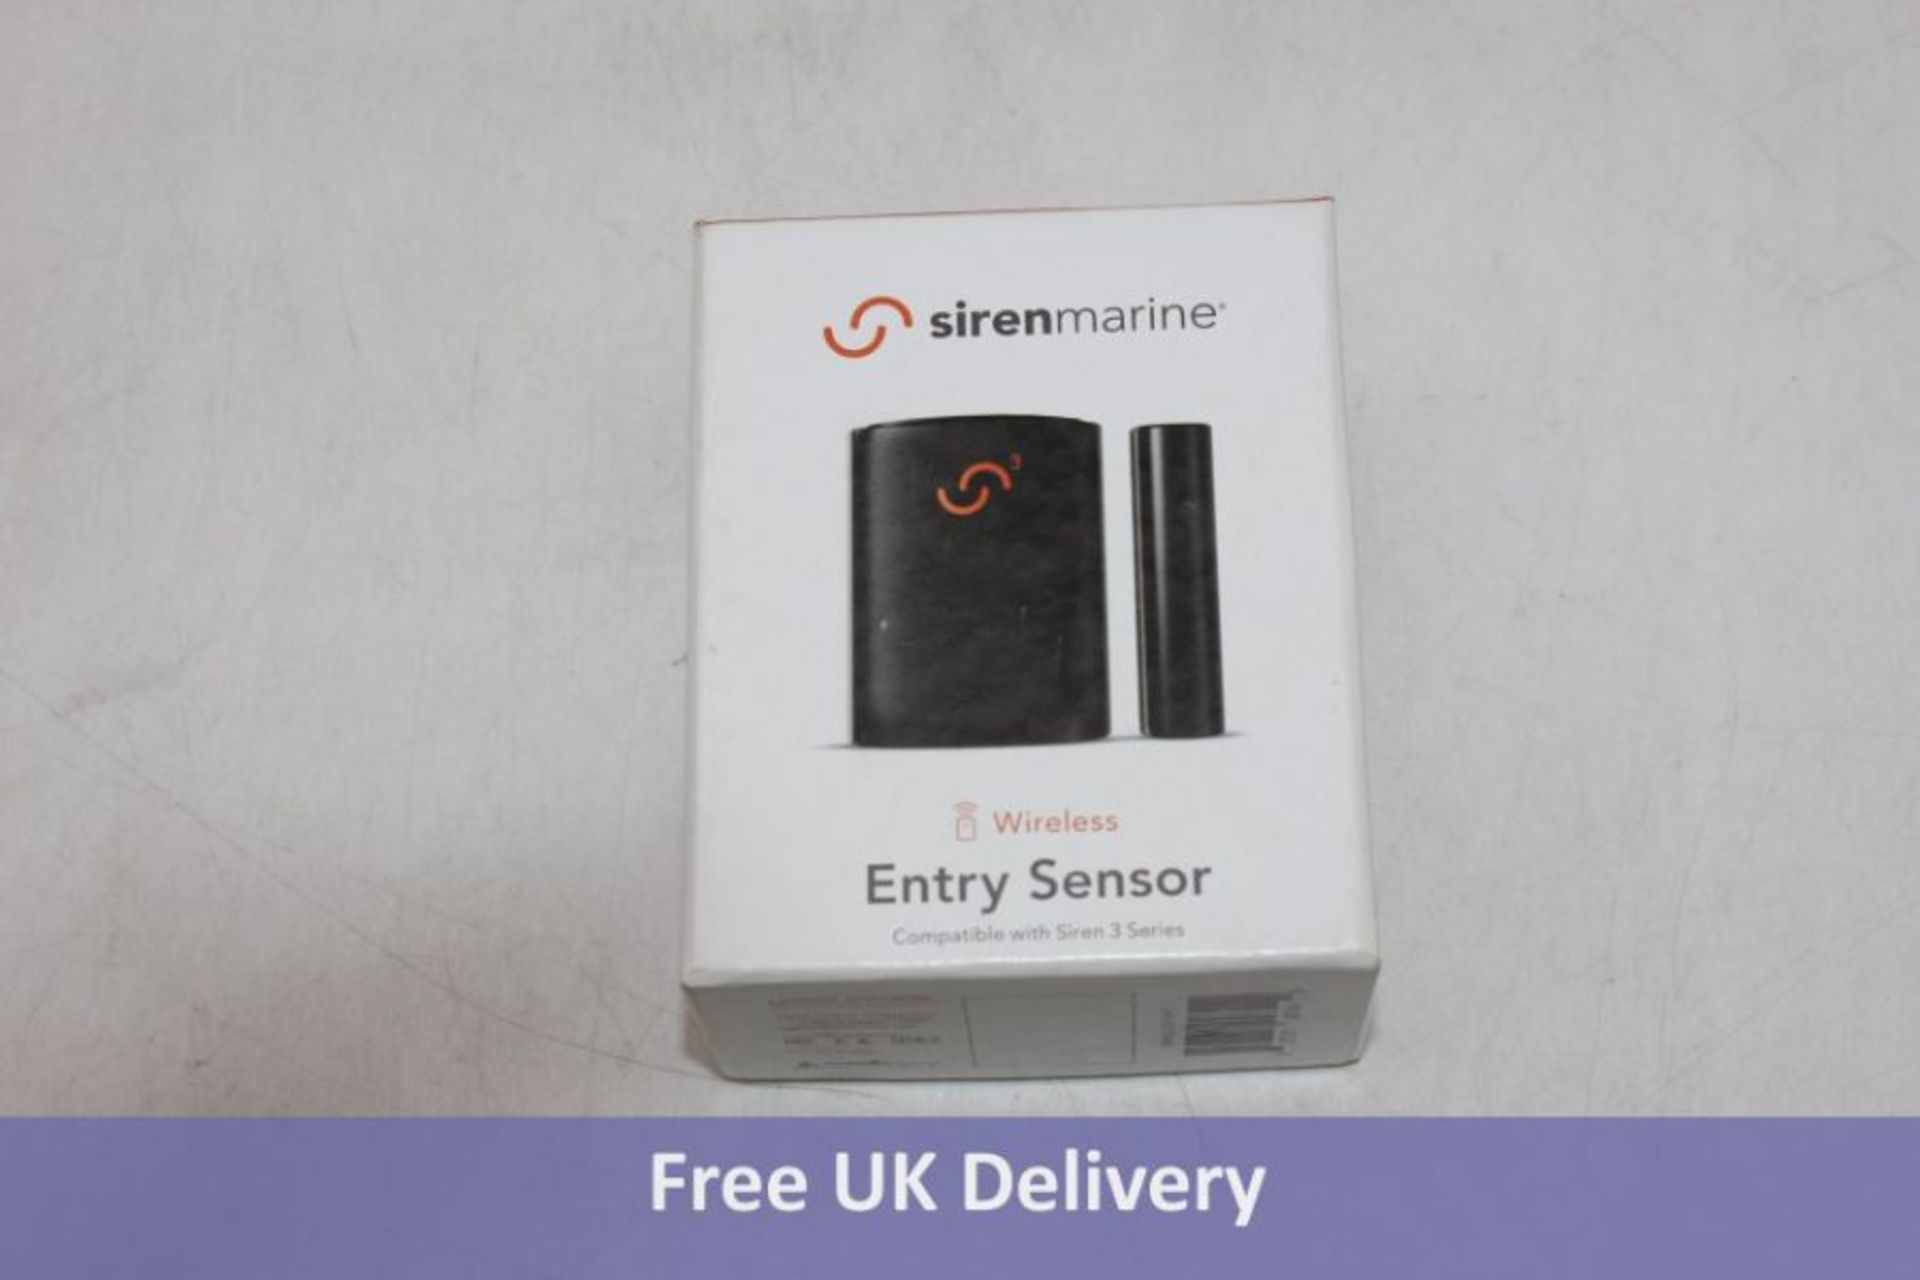 SirenMarine Siren 3 Pro Entry Sensor. Opened, not tested